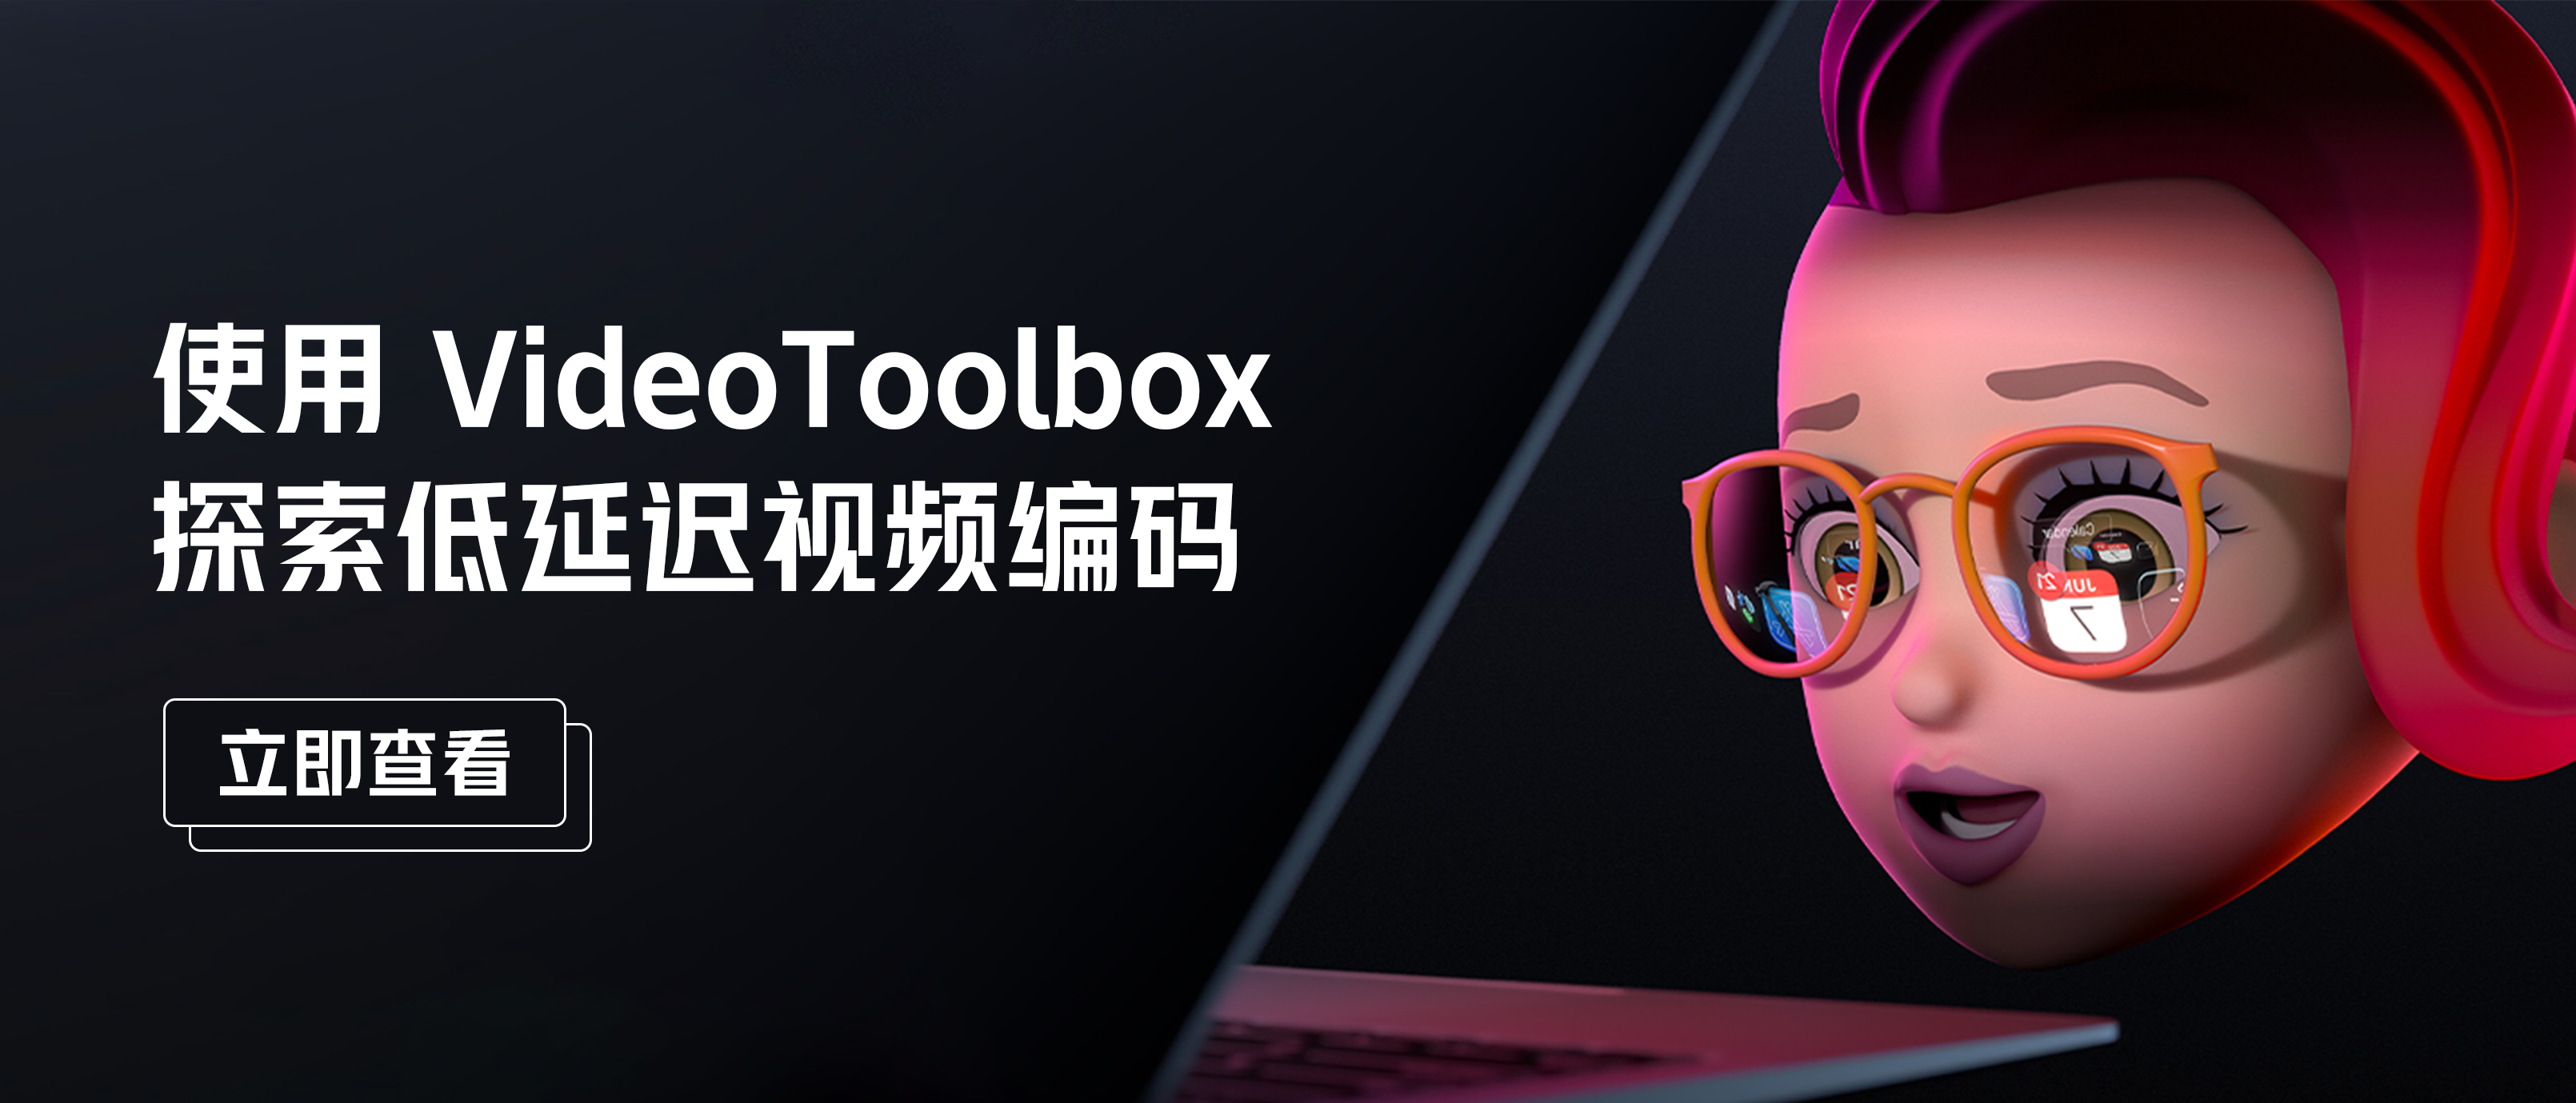 使用 VideoToolbox 探索低延迟视频编码 | WWDC 演讲实录